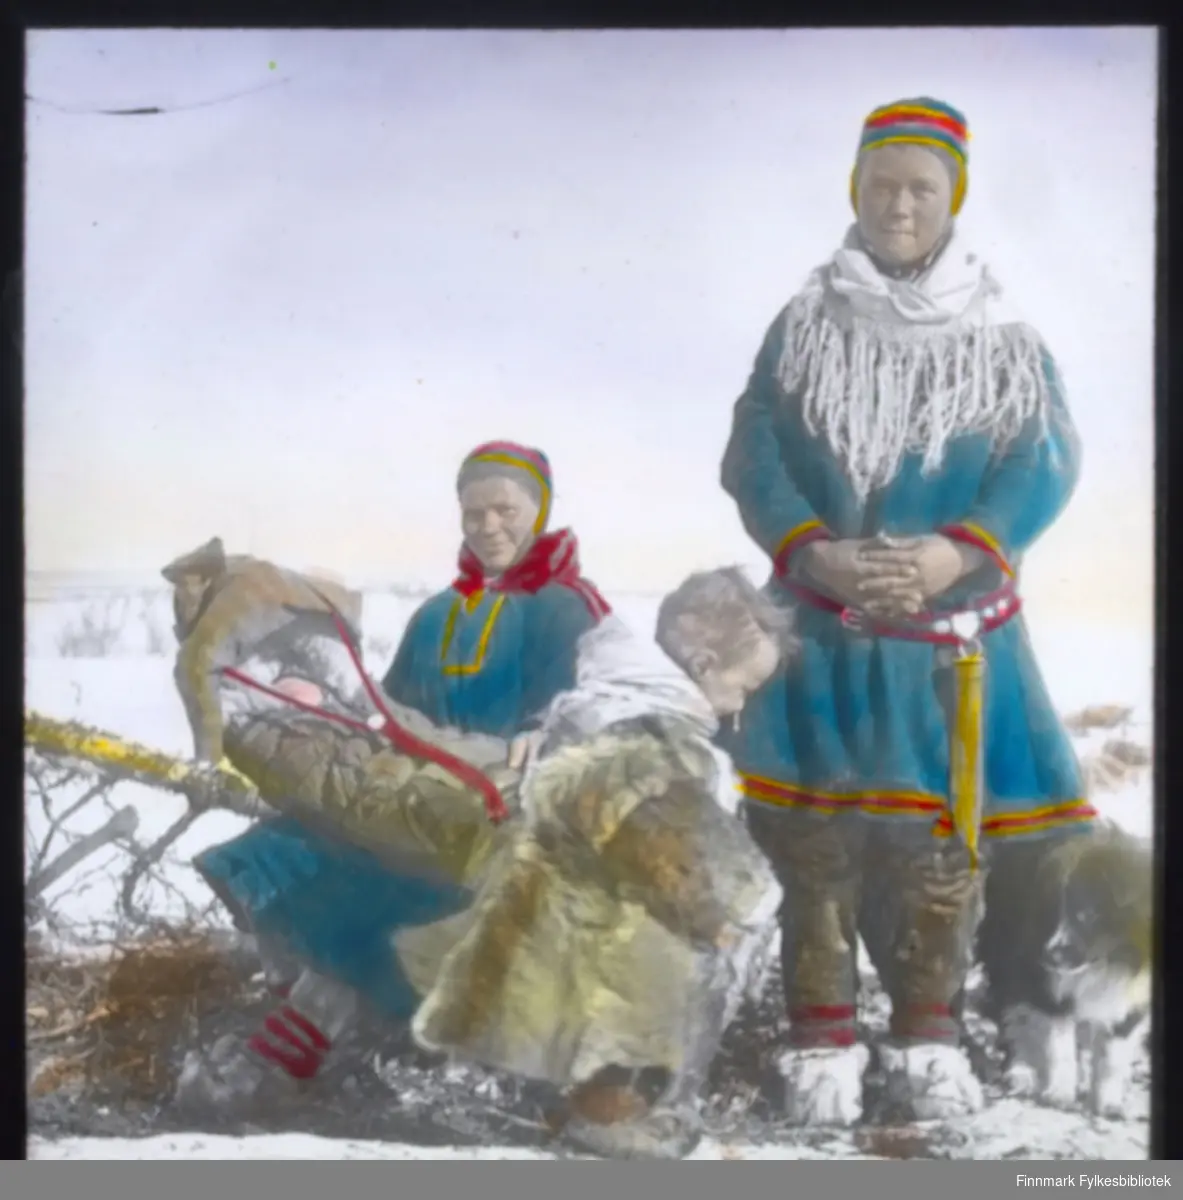 "N.549A9. Fjellsamer i Kautokeino" står det på glassnegativet. To samiske kvinner med sine barn er fotografert. Den ene sitter på en slede med et spebarn i komse. Barnet sover. Et litt større barn i pesk (reinsdyrpels) står foran i bildet. En samisk kvinne står oppreist. Begge er kledd i samisk kofte med sjal og lue. Kvinnen som står har en stor samekniv (storkniv) i beltet.